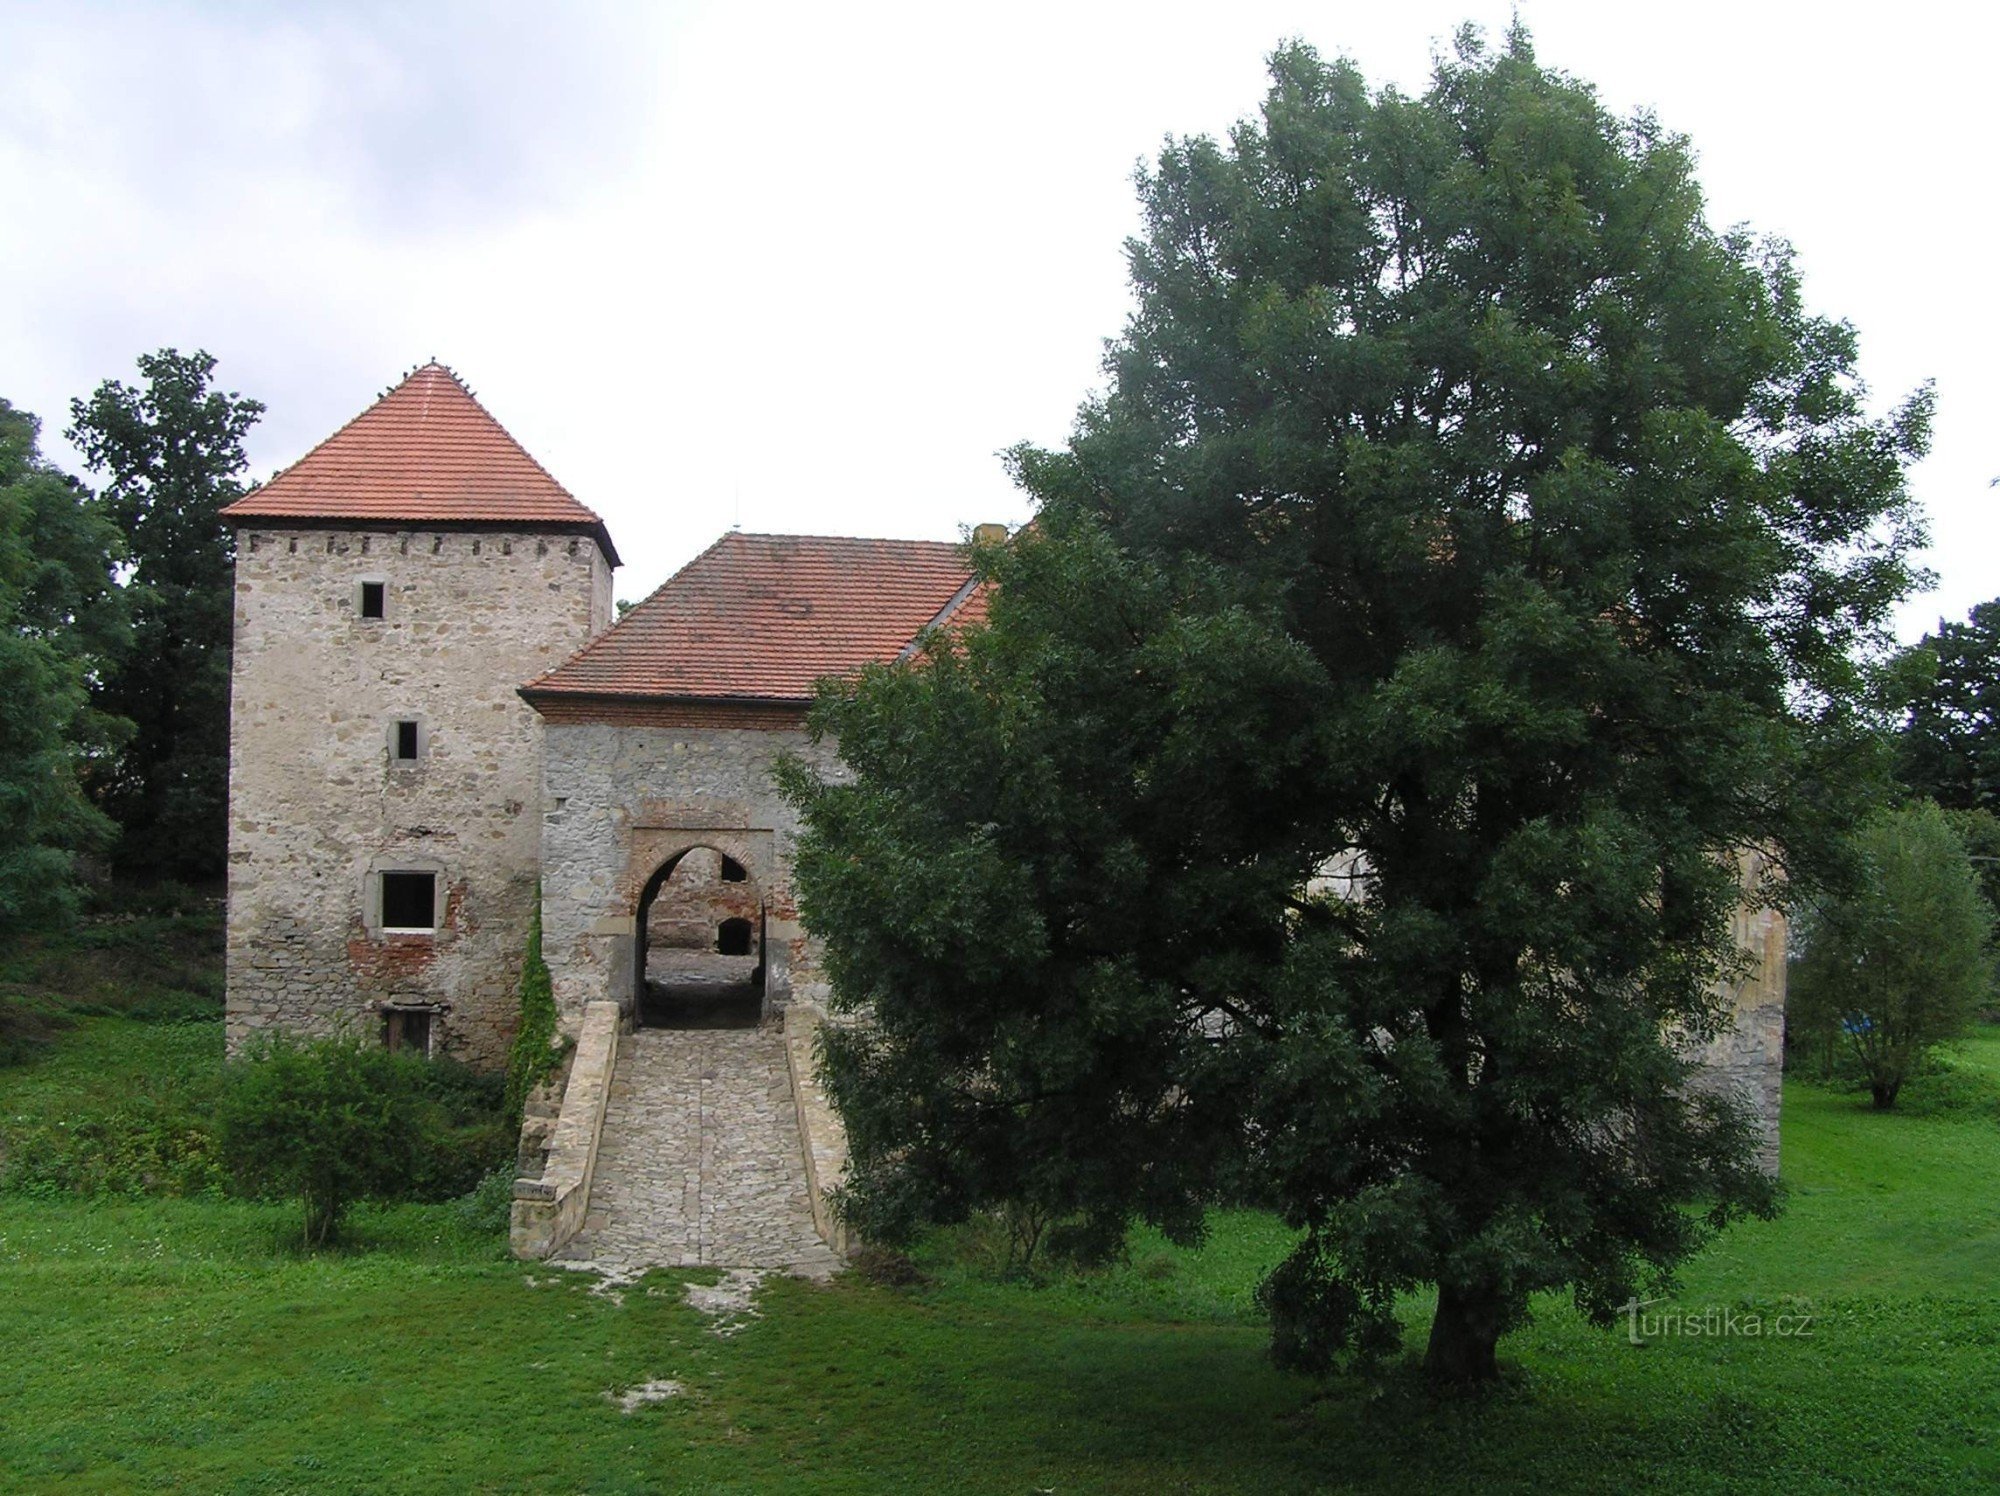 Pogled s dvorca na Gornju tvrđavu